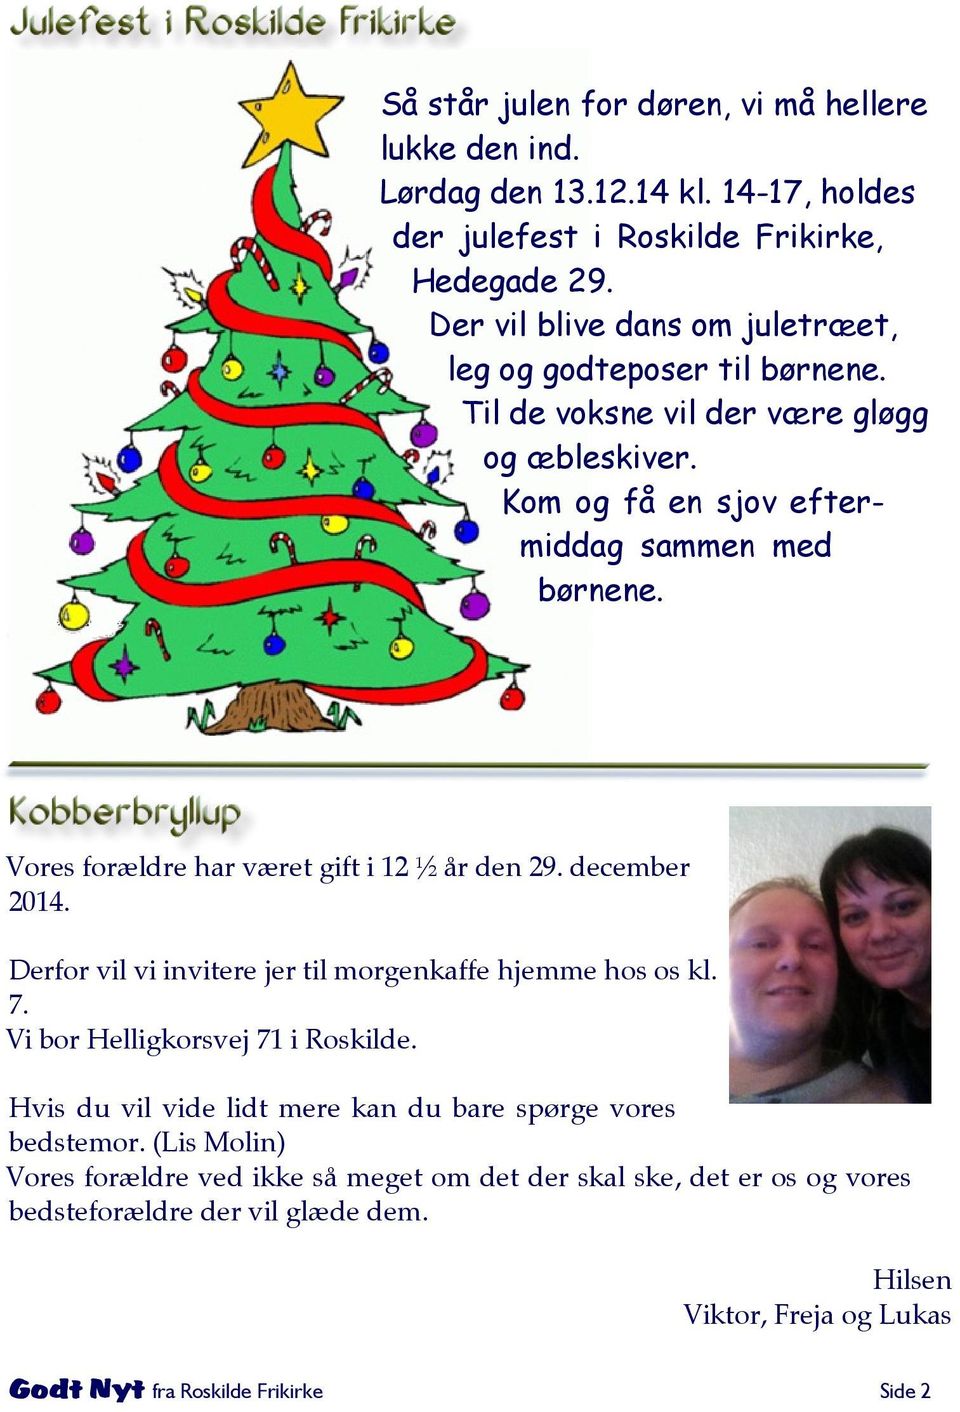 Vores forældre har været gift i 12 ½ år den 29. december 2014. Derfor vil vi invitere jer til morgenkaffe hjemme hos os kl. 7. Vi bor Helligkorsvej 71 i Roskilde.